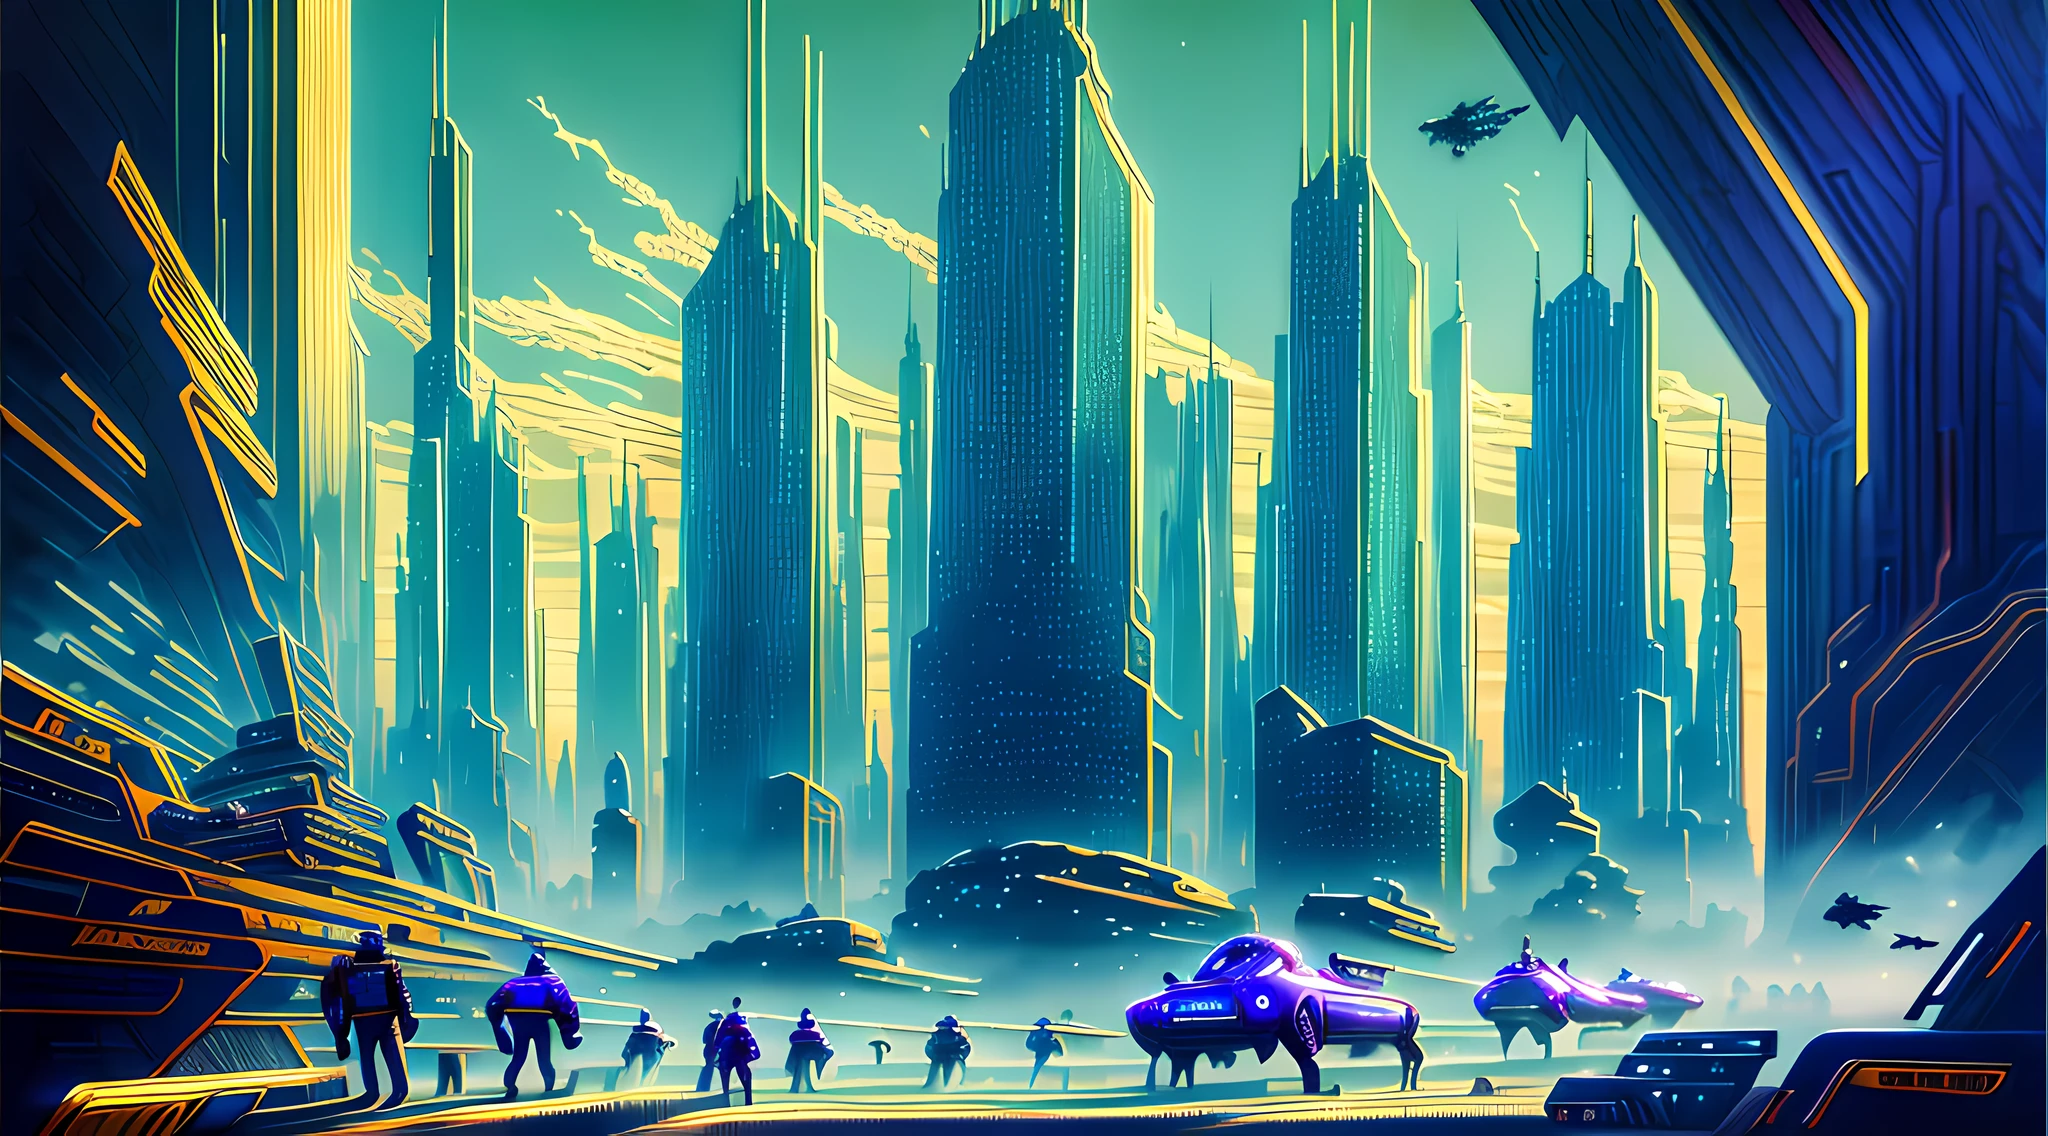 一幅描绘未来城市景观的油画, 摩天大楼和飞行器占据了整个画面. 色彩明亮而鲜艳, 带有蓝色色调, 绿色的, 紫色占据主导地位. 在前景中, 一群人走向一个巨人, 发光的金字塔.